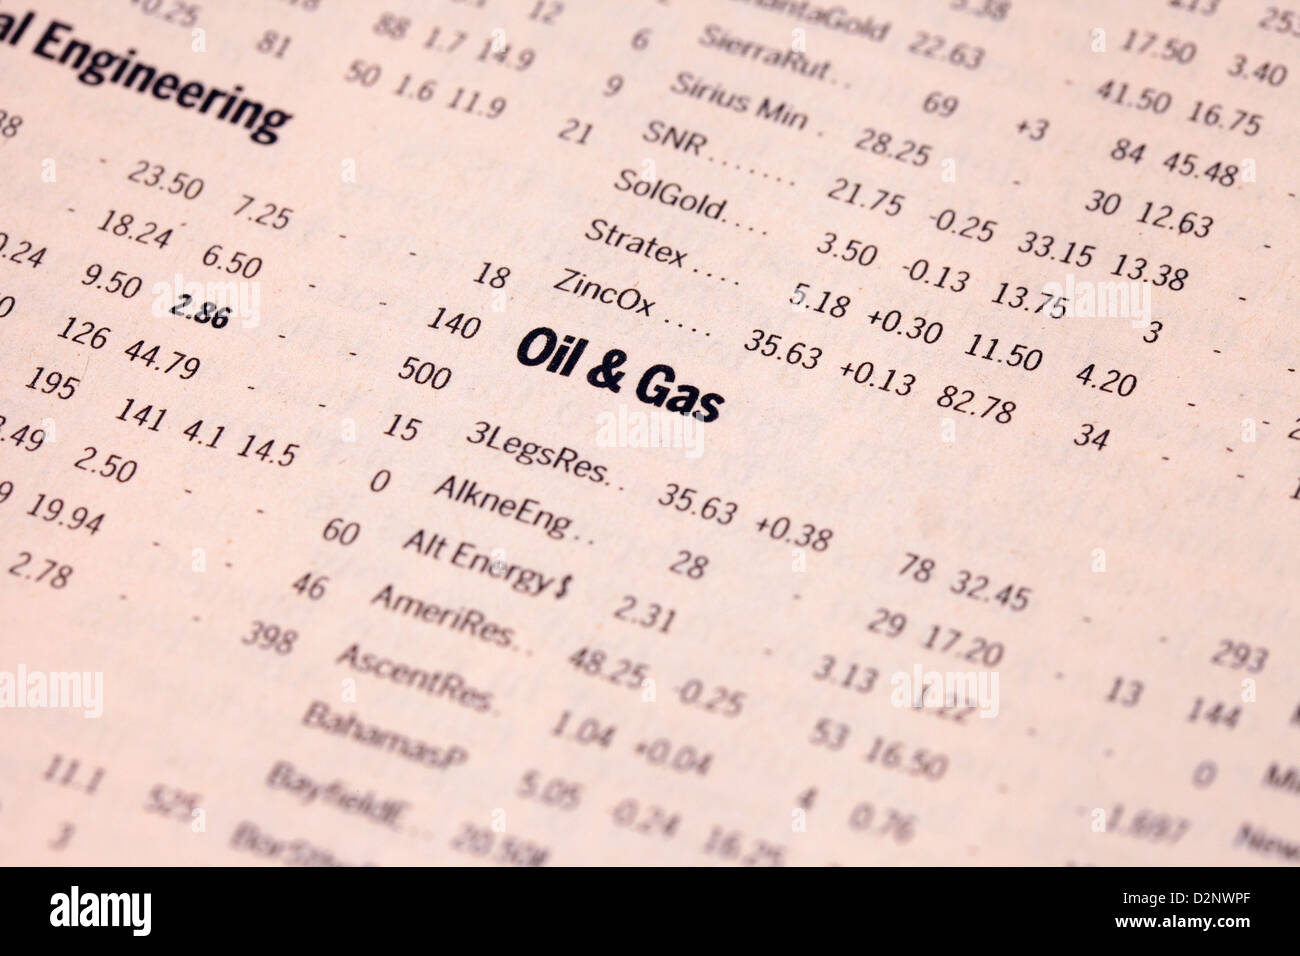 Les stocks de pétrole et de gaz et les prix des actions dans le journal Financial Times, UK Banque D'Images